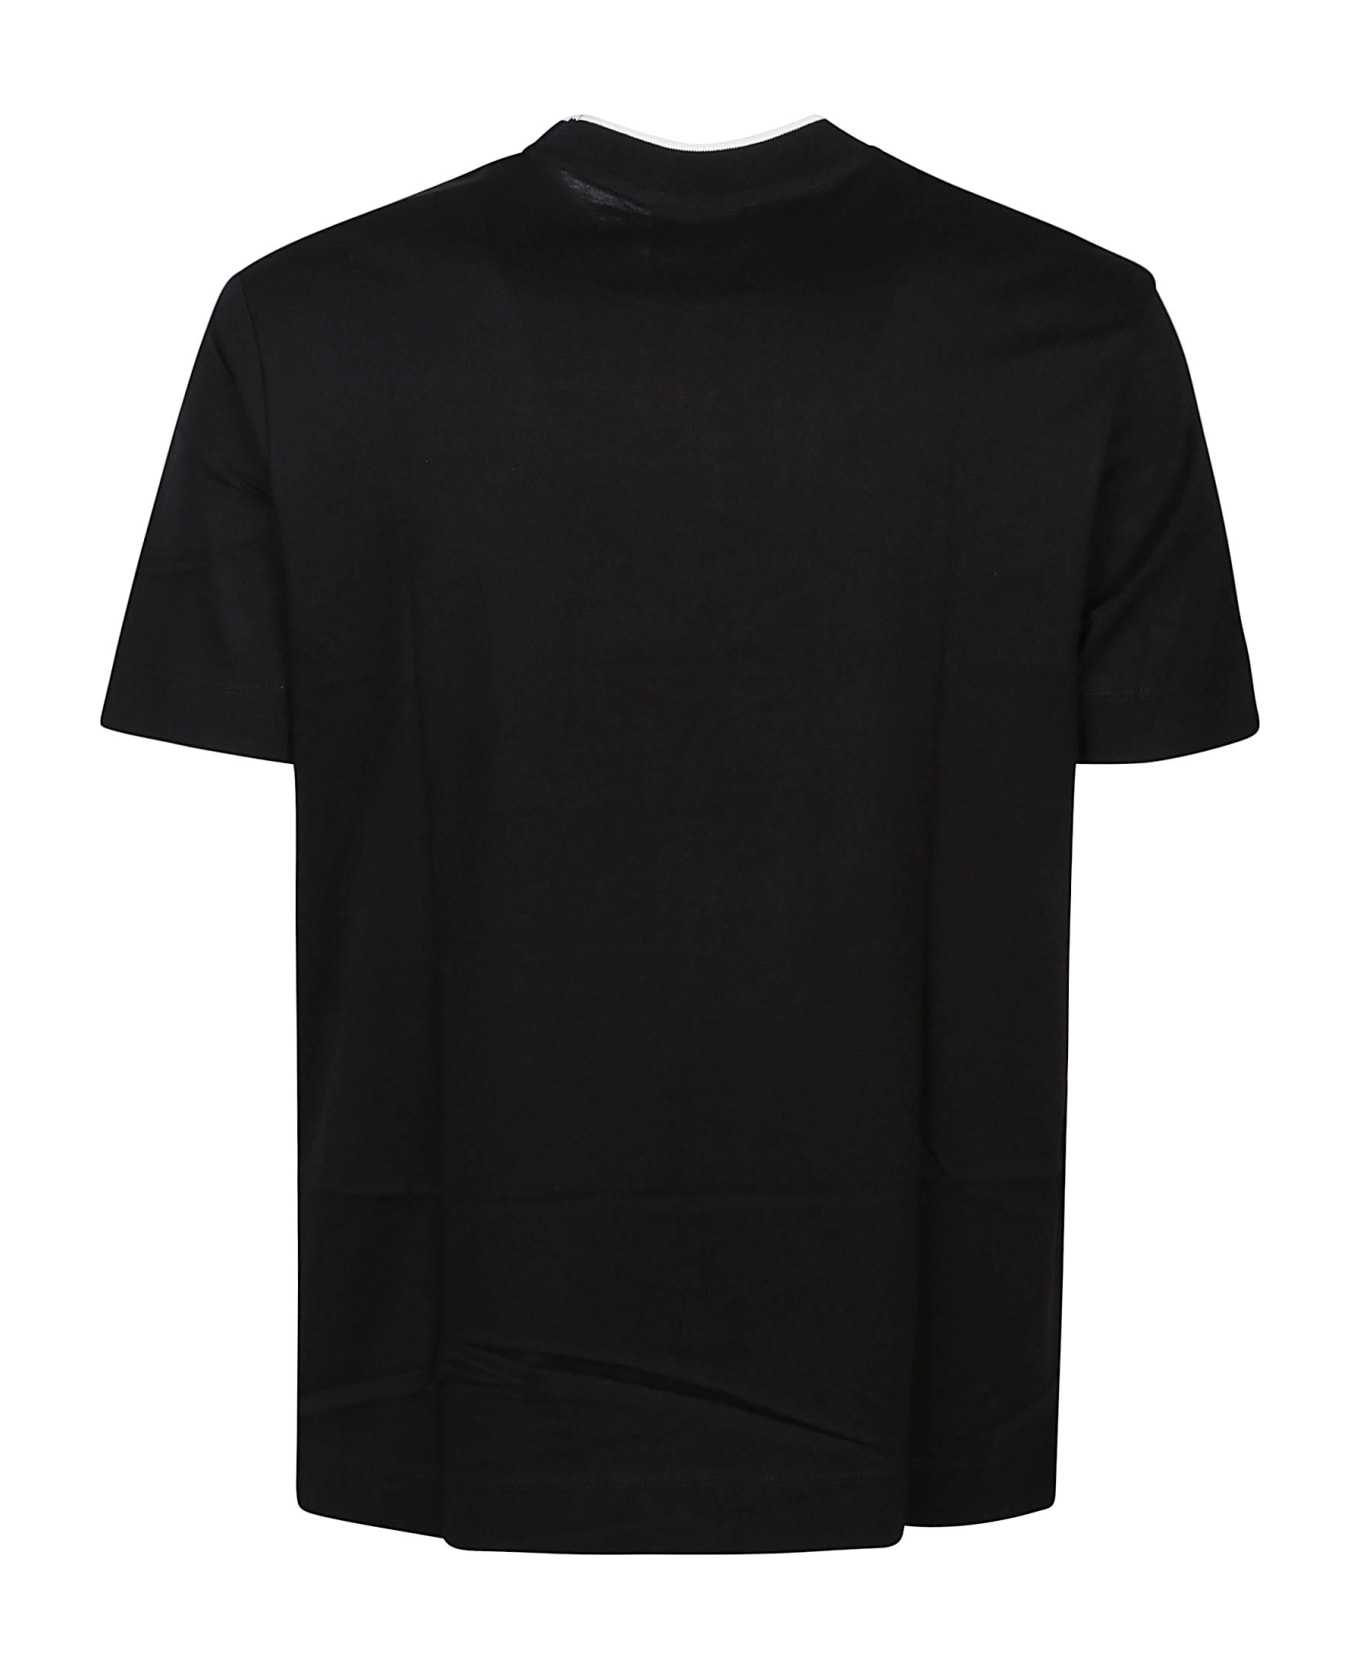 Emporio Armani T-shirt - Nero シャツ